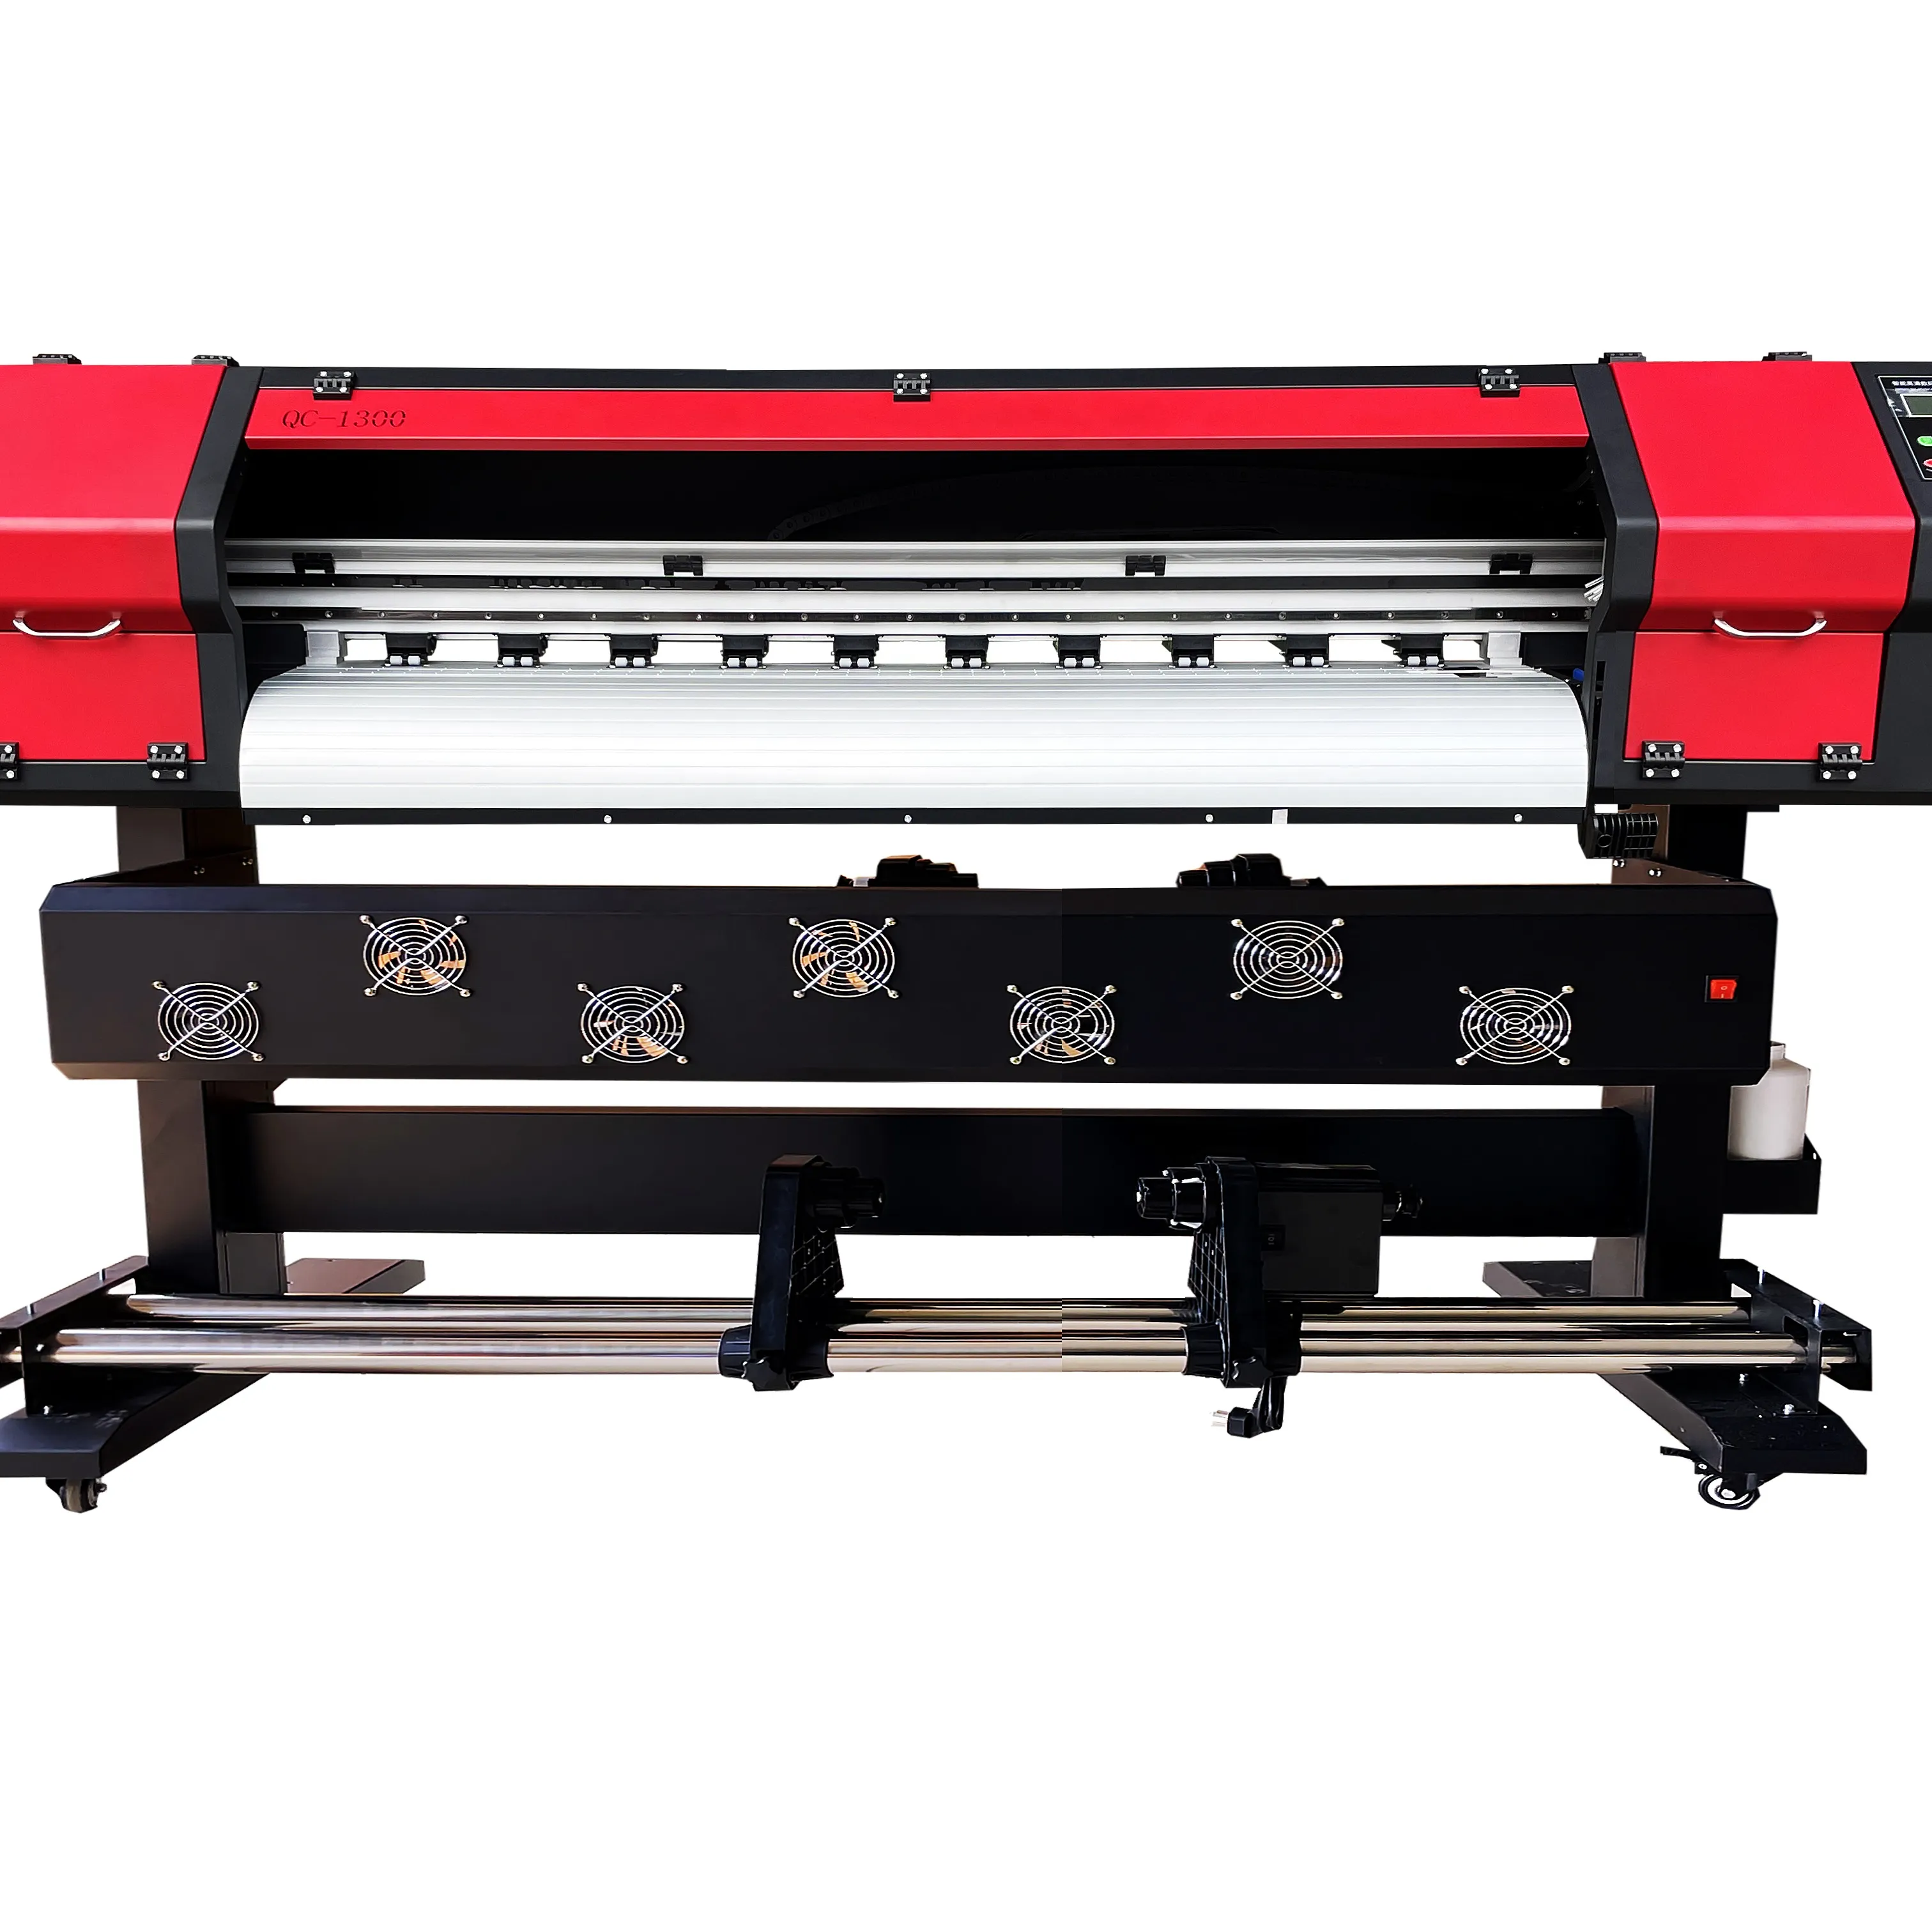 QC1300 लाल रंग सिंगल हेड डिजिटल प्रिंटर i3200 प्रिंटहेड रोल टू रोल प्रिंटिंग मशीन बड़े प्रारूप विज्ञापन प्रिंटिंग